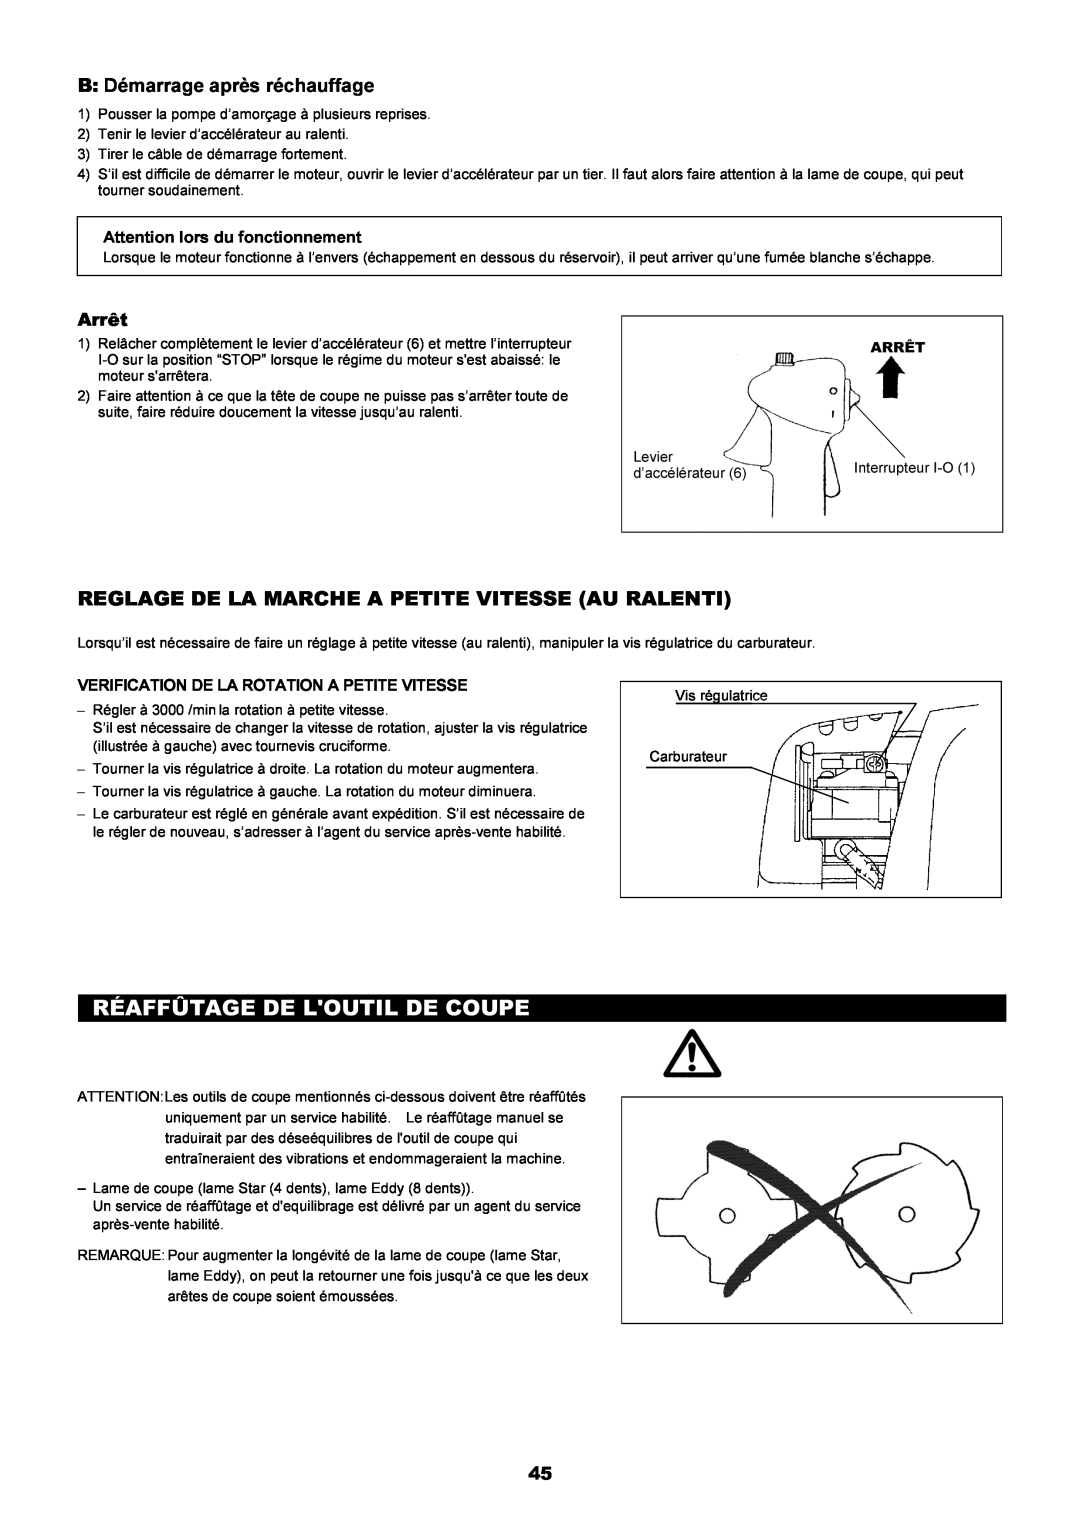 Dolmar MS-250.4, MS-251.4 instruction manual Réaffûtage De Loutil De Coupe, Reglage De La Marche A Petite Vitesse Au Ralenti 